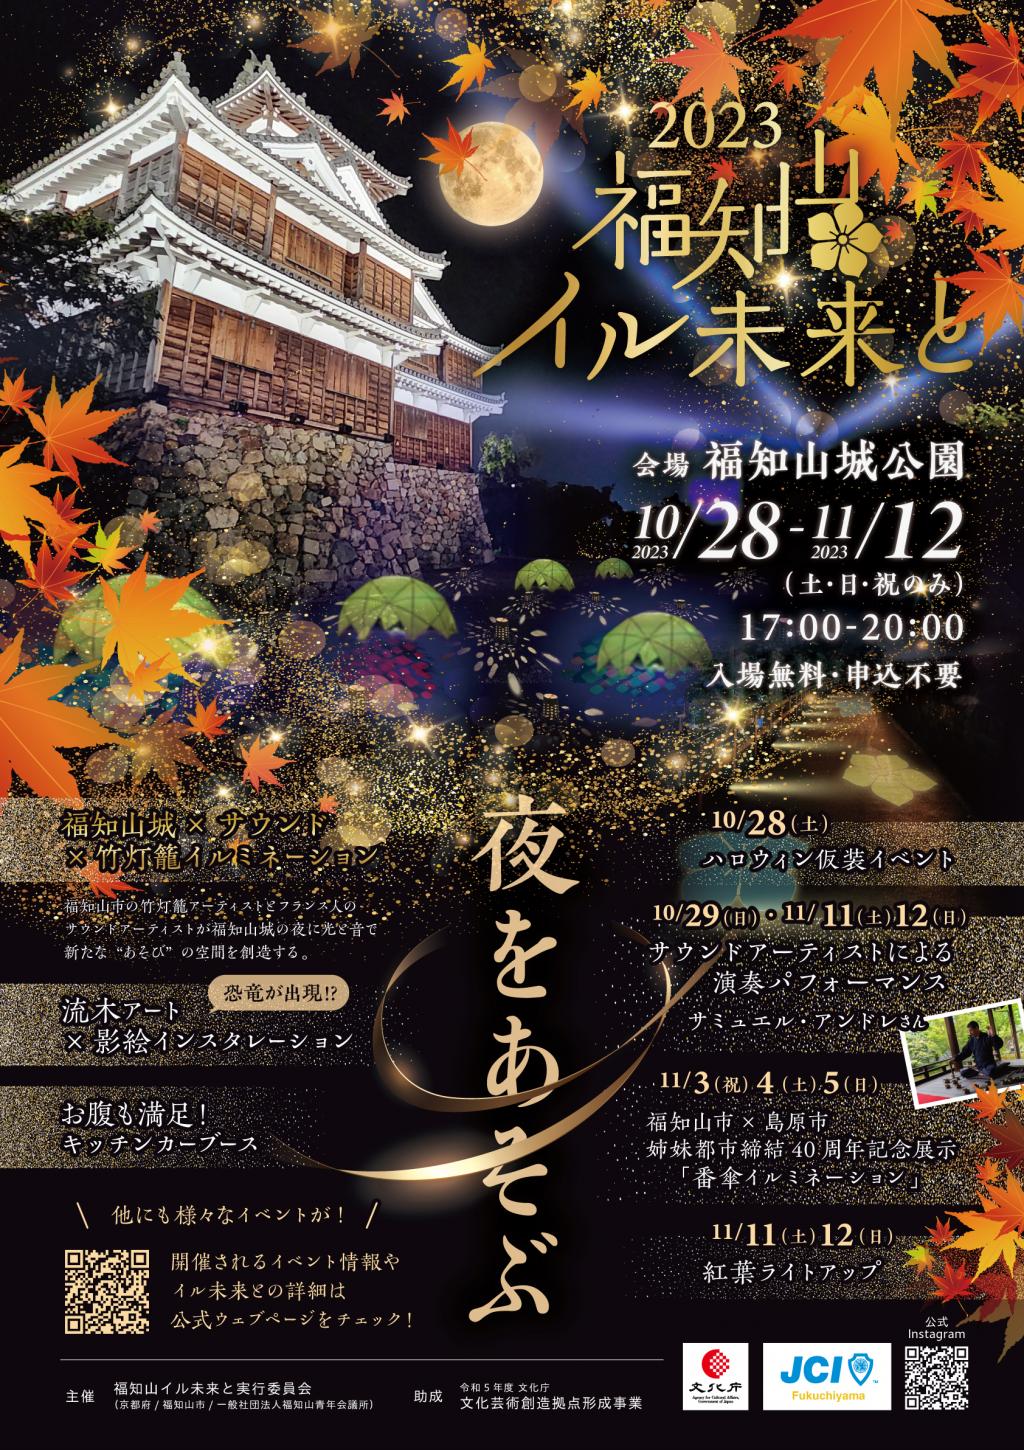 【福知山市】アートイベント『福知山イル未来と』が開催されます。